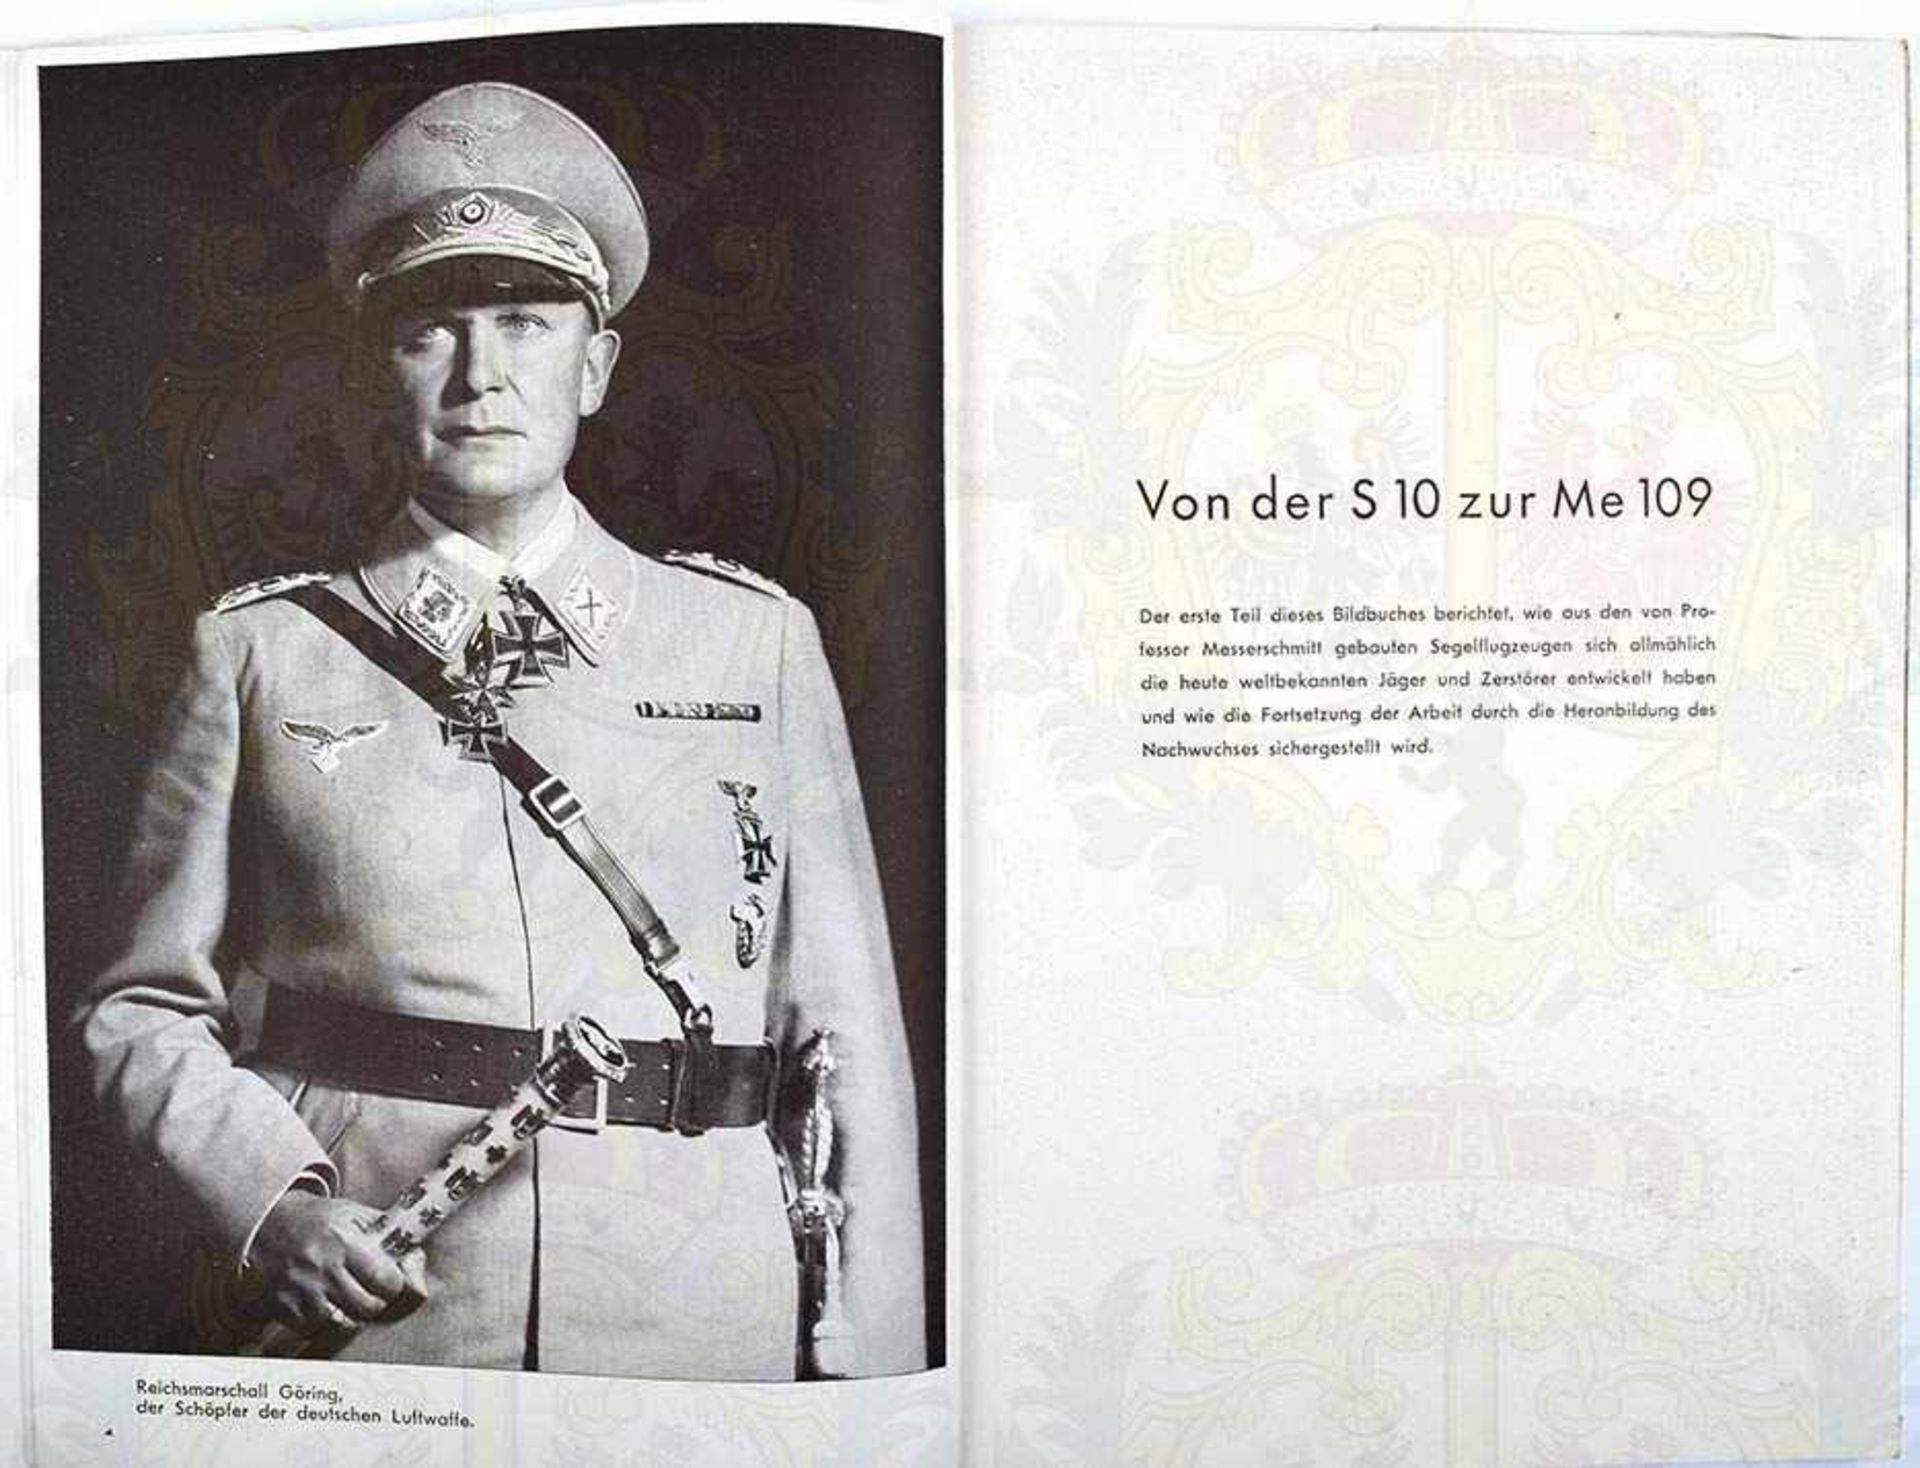 ME 109 DER SIEGREICHE DEUTSCHE JÄGER, Hoffmann-Fotoband 1941, 96 S., kart., SU m. Gebrauchsspuren - Bild 2 aus 2